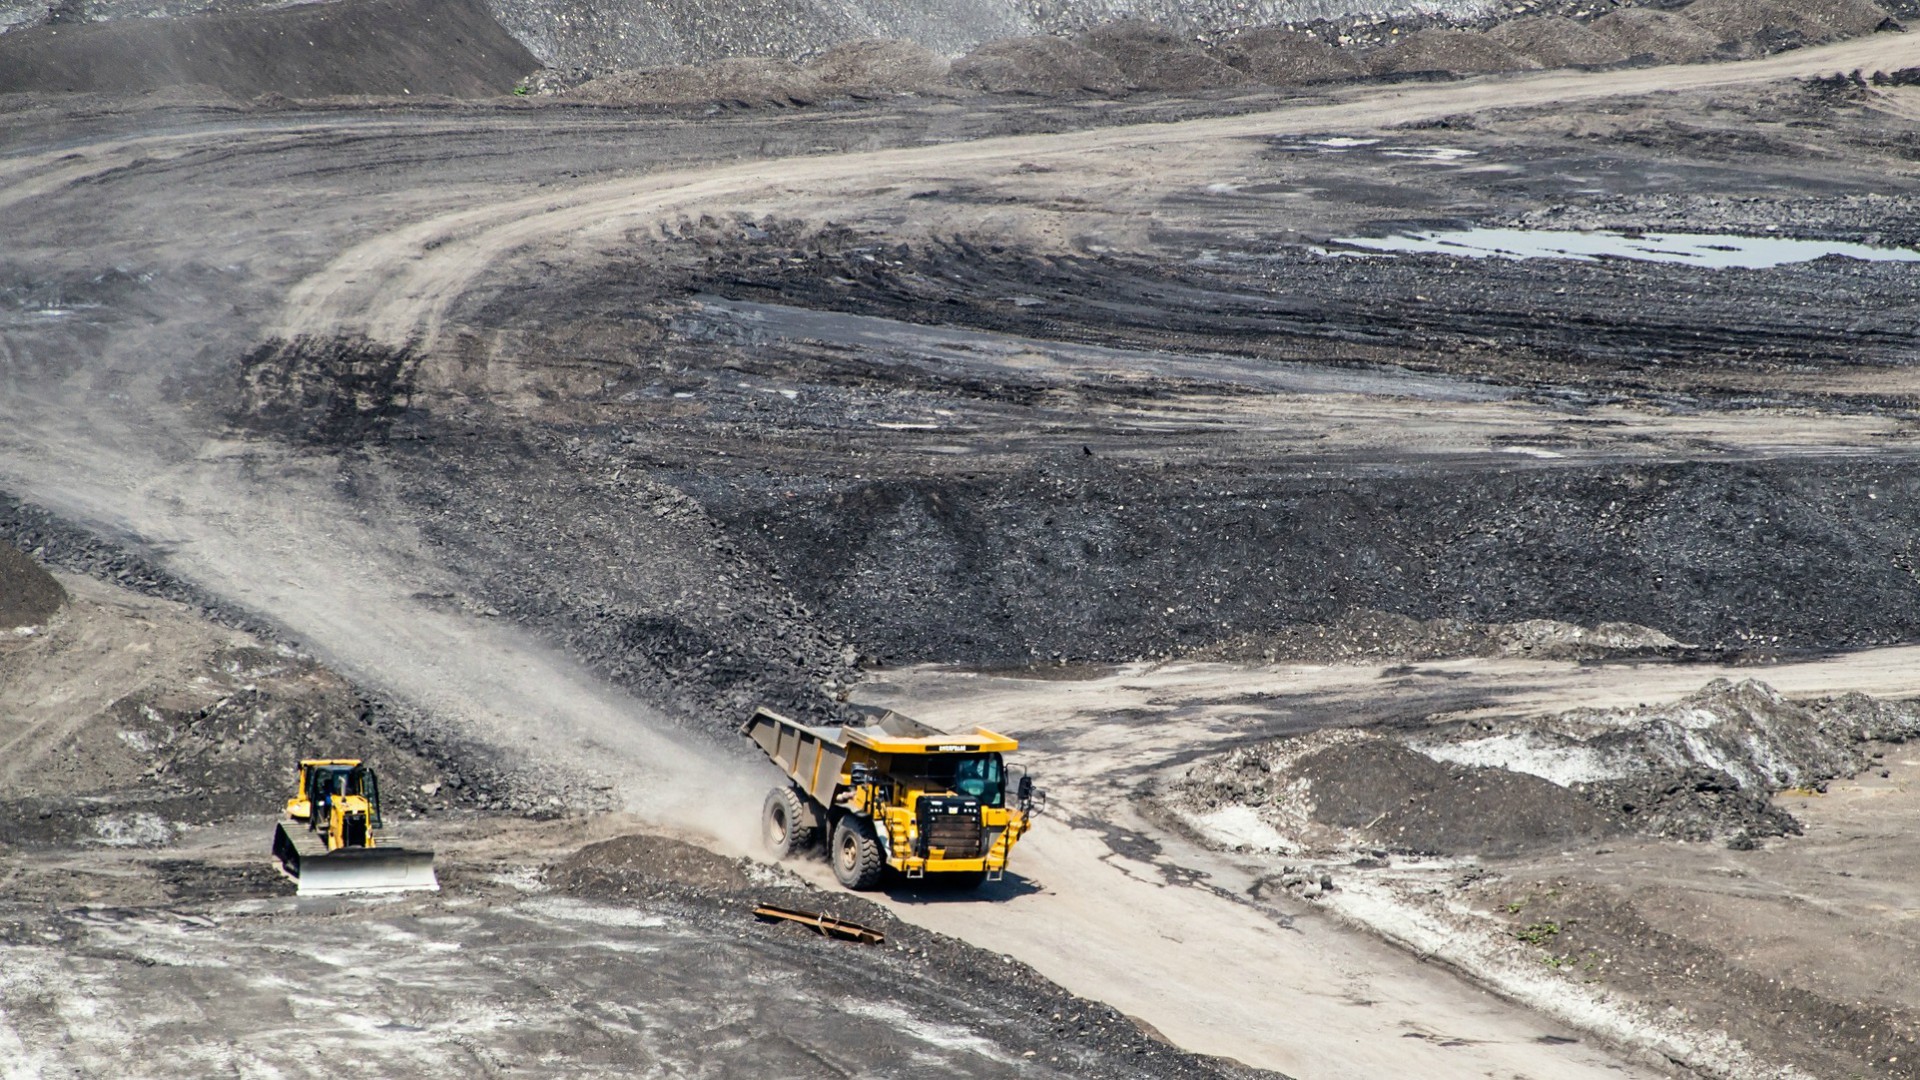 L'exploitation minière est souvent nuisible pour les populations locales (Photo d'illustration/Flickr/CC BY-NC 2.0)